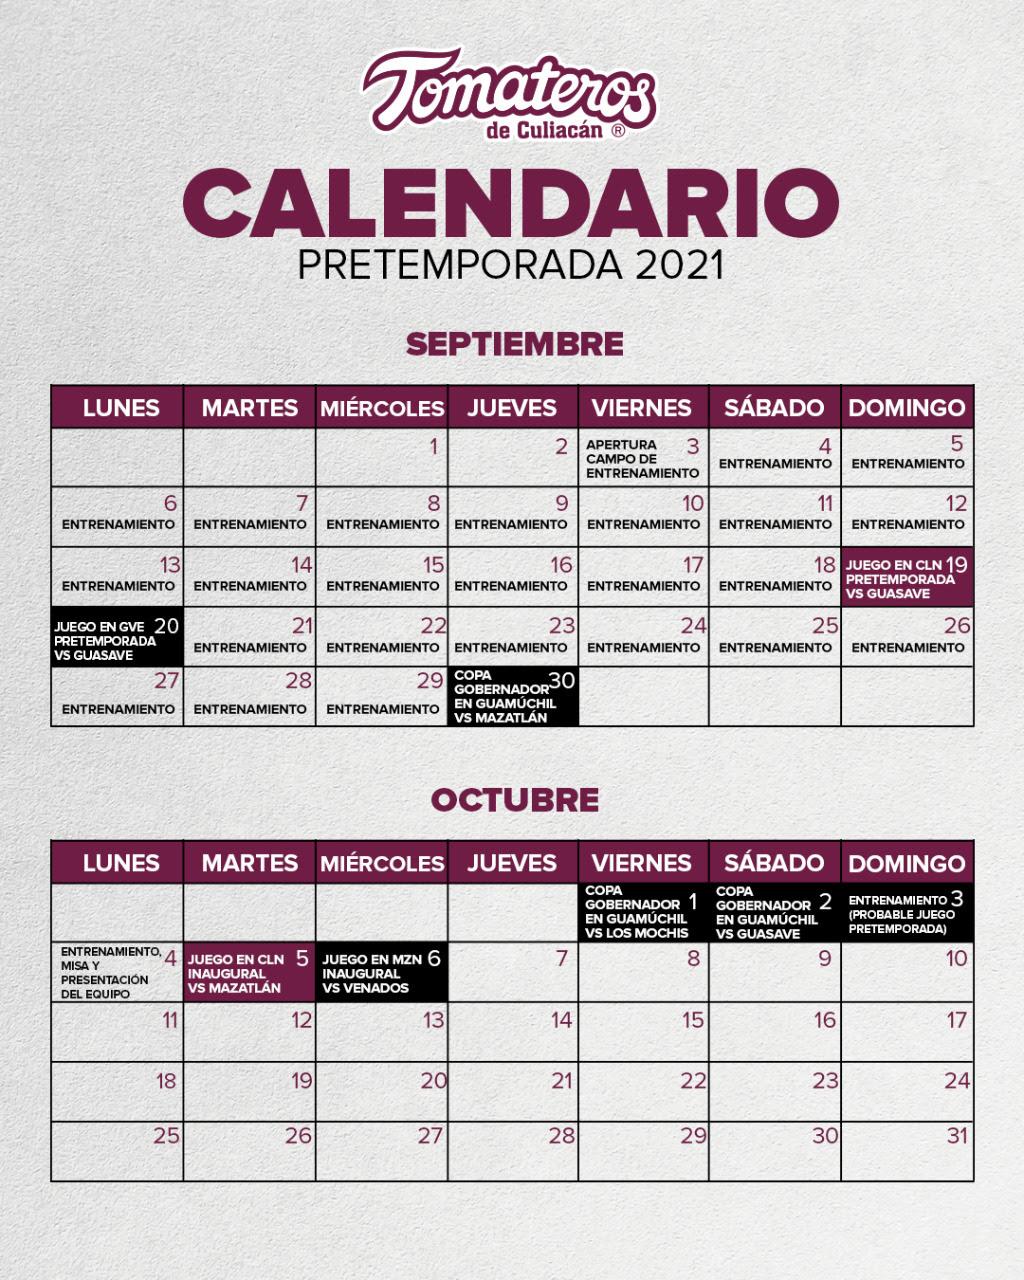 $!Tomateros de Culiacán define su calendario de pretemporada y lista de invitados